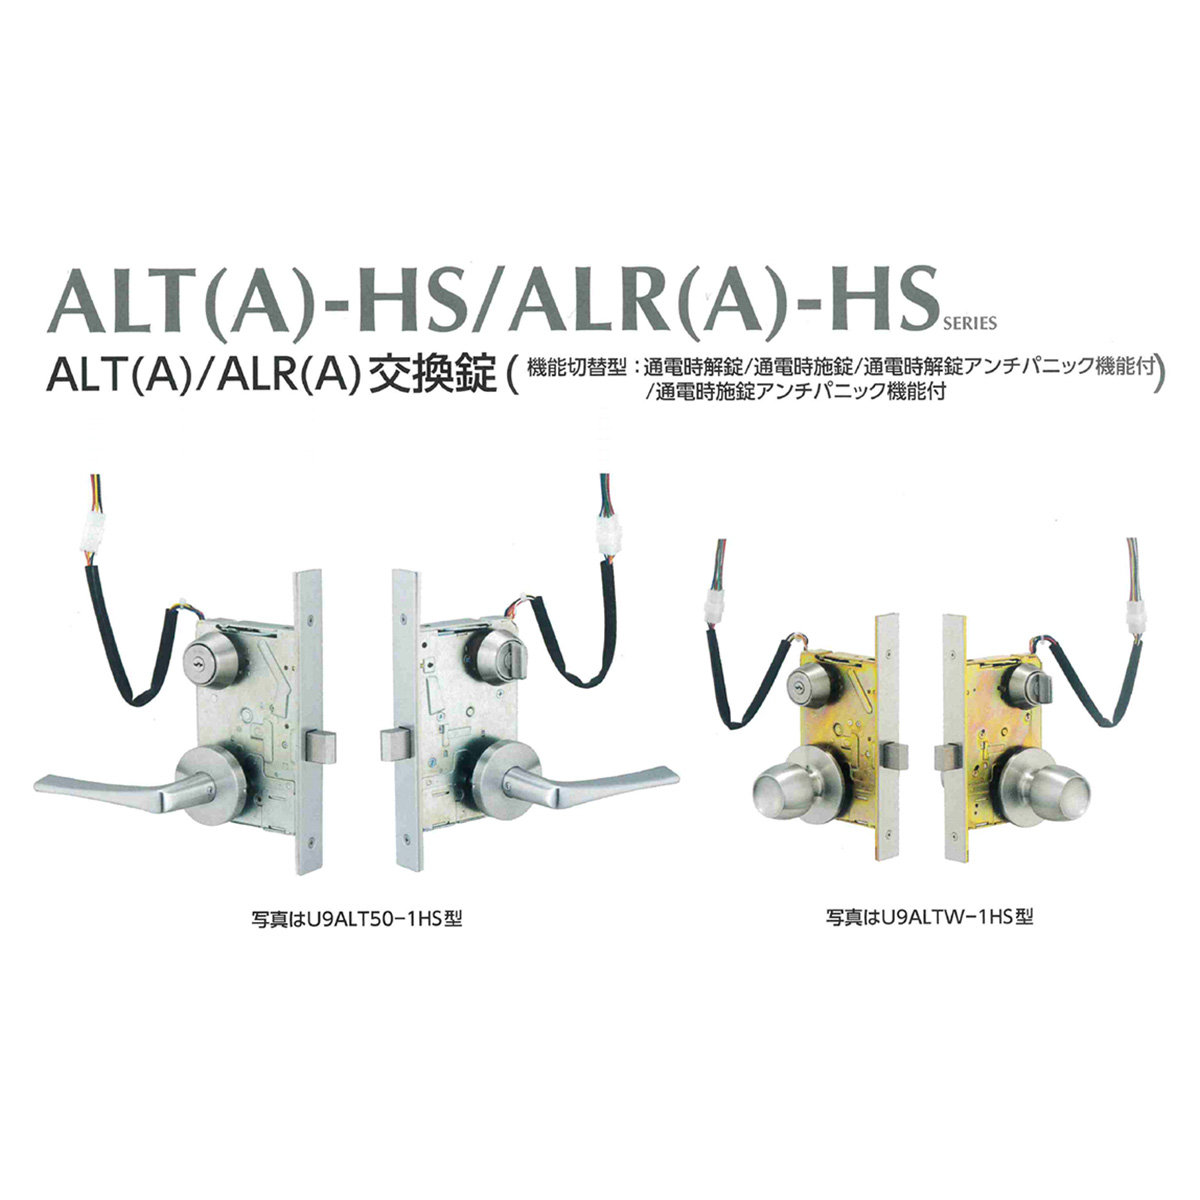 MIWA，美和ロック ALT-(A)HS、ALR(A)-HS 電気錠鍵